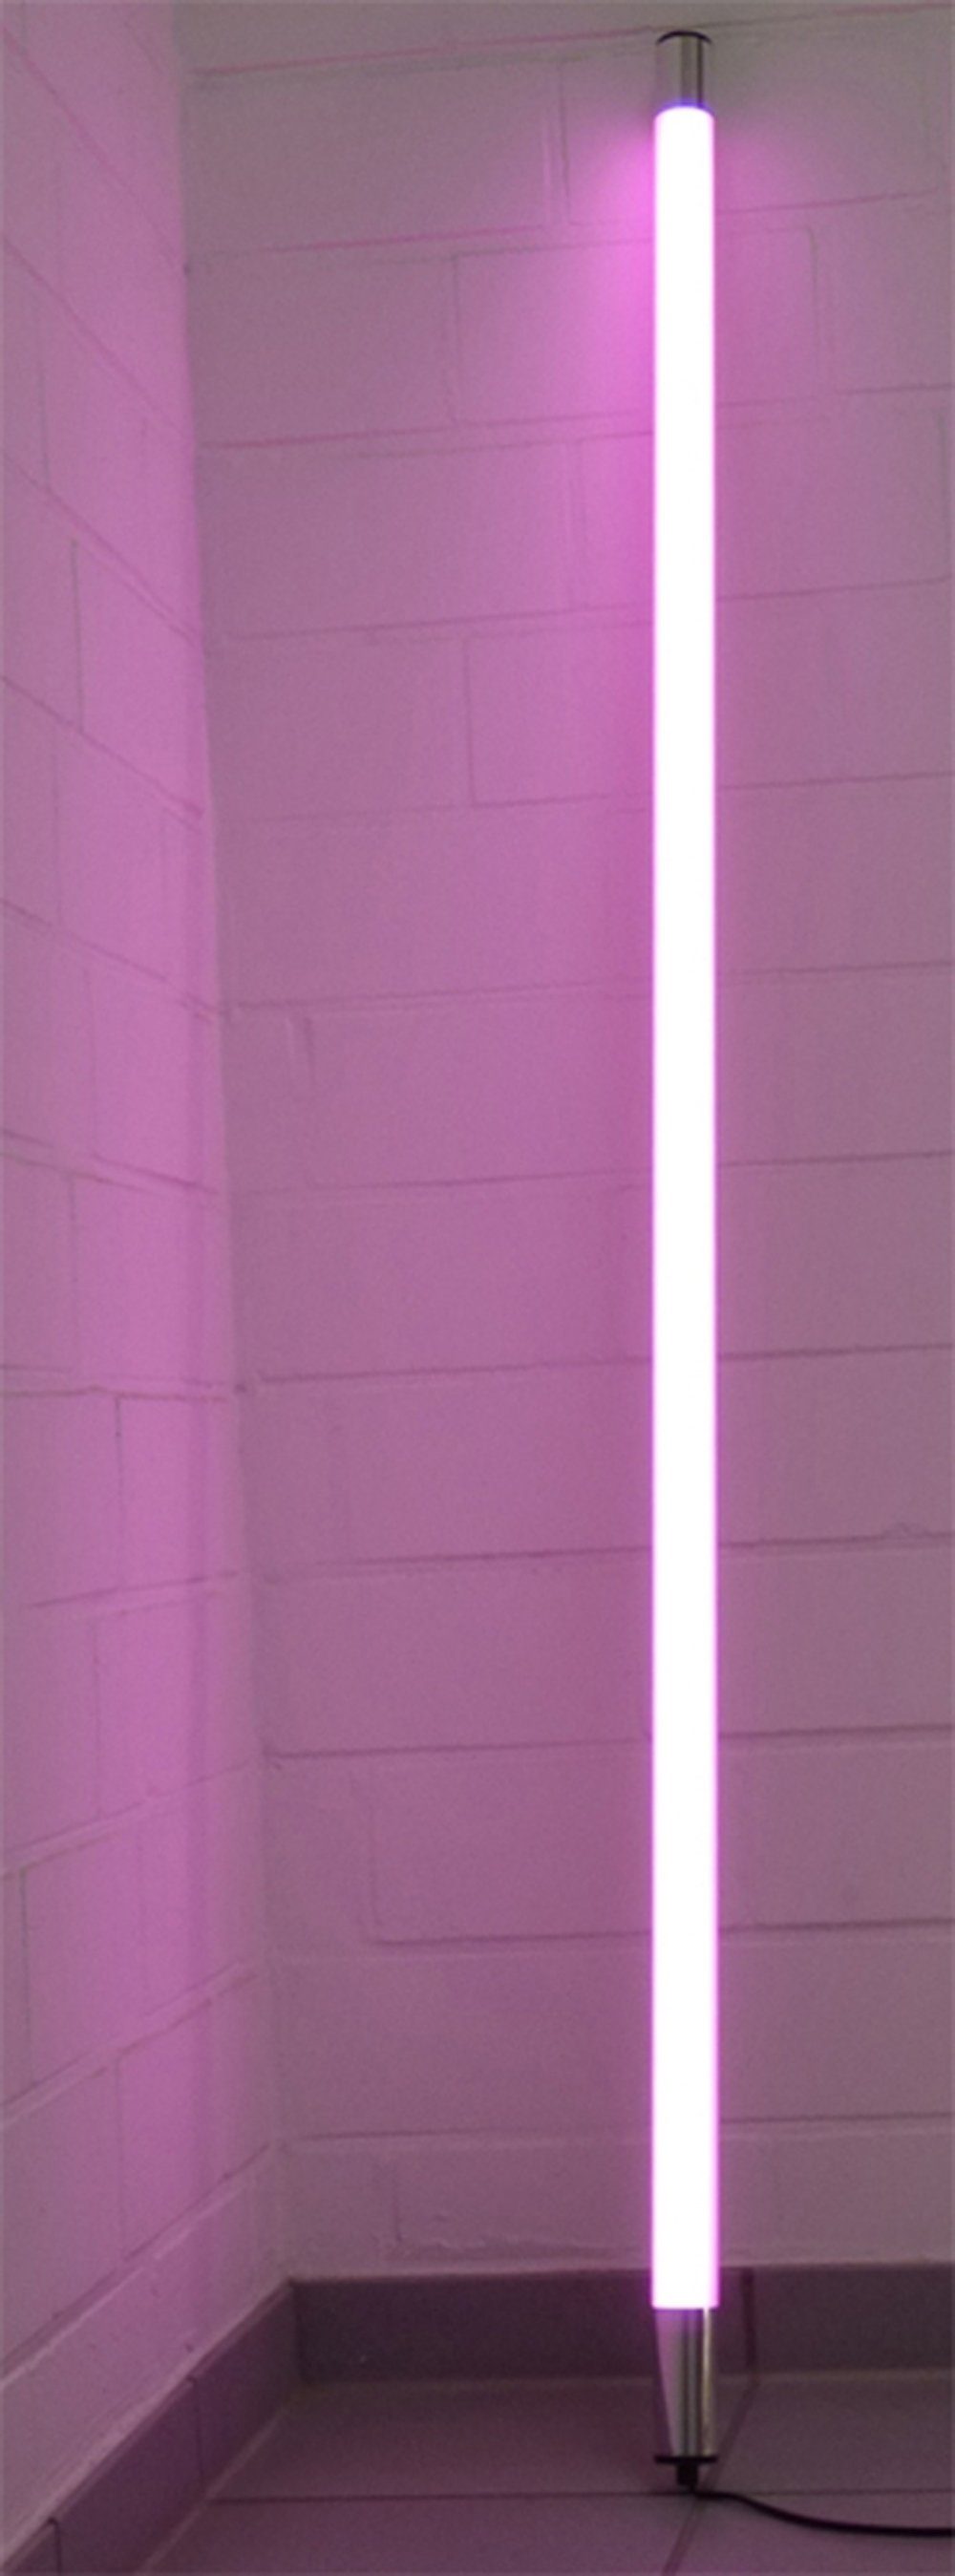 XENON LED Wandleuchte 8088 LED Leuchtstab Satiniert 1,23m Länge 1700 Lumen IP44 Außen Pink, LED, Xenon / Pink